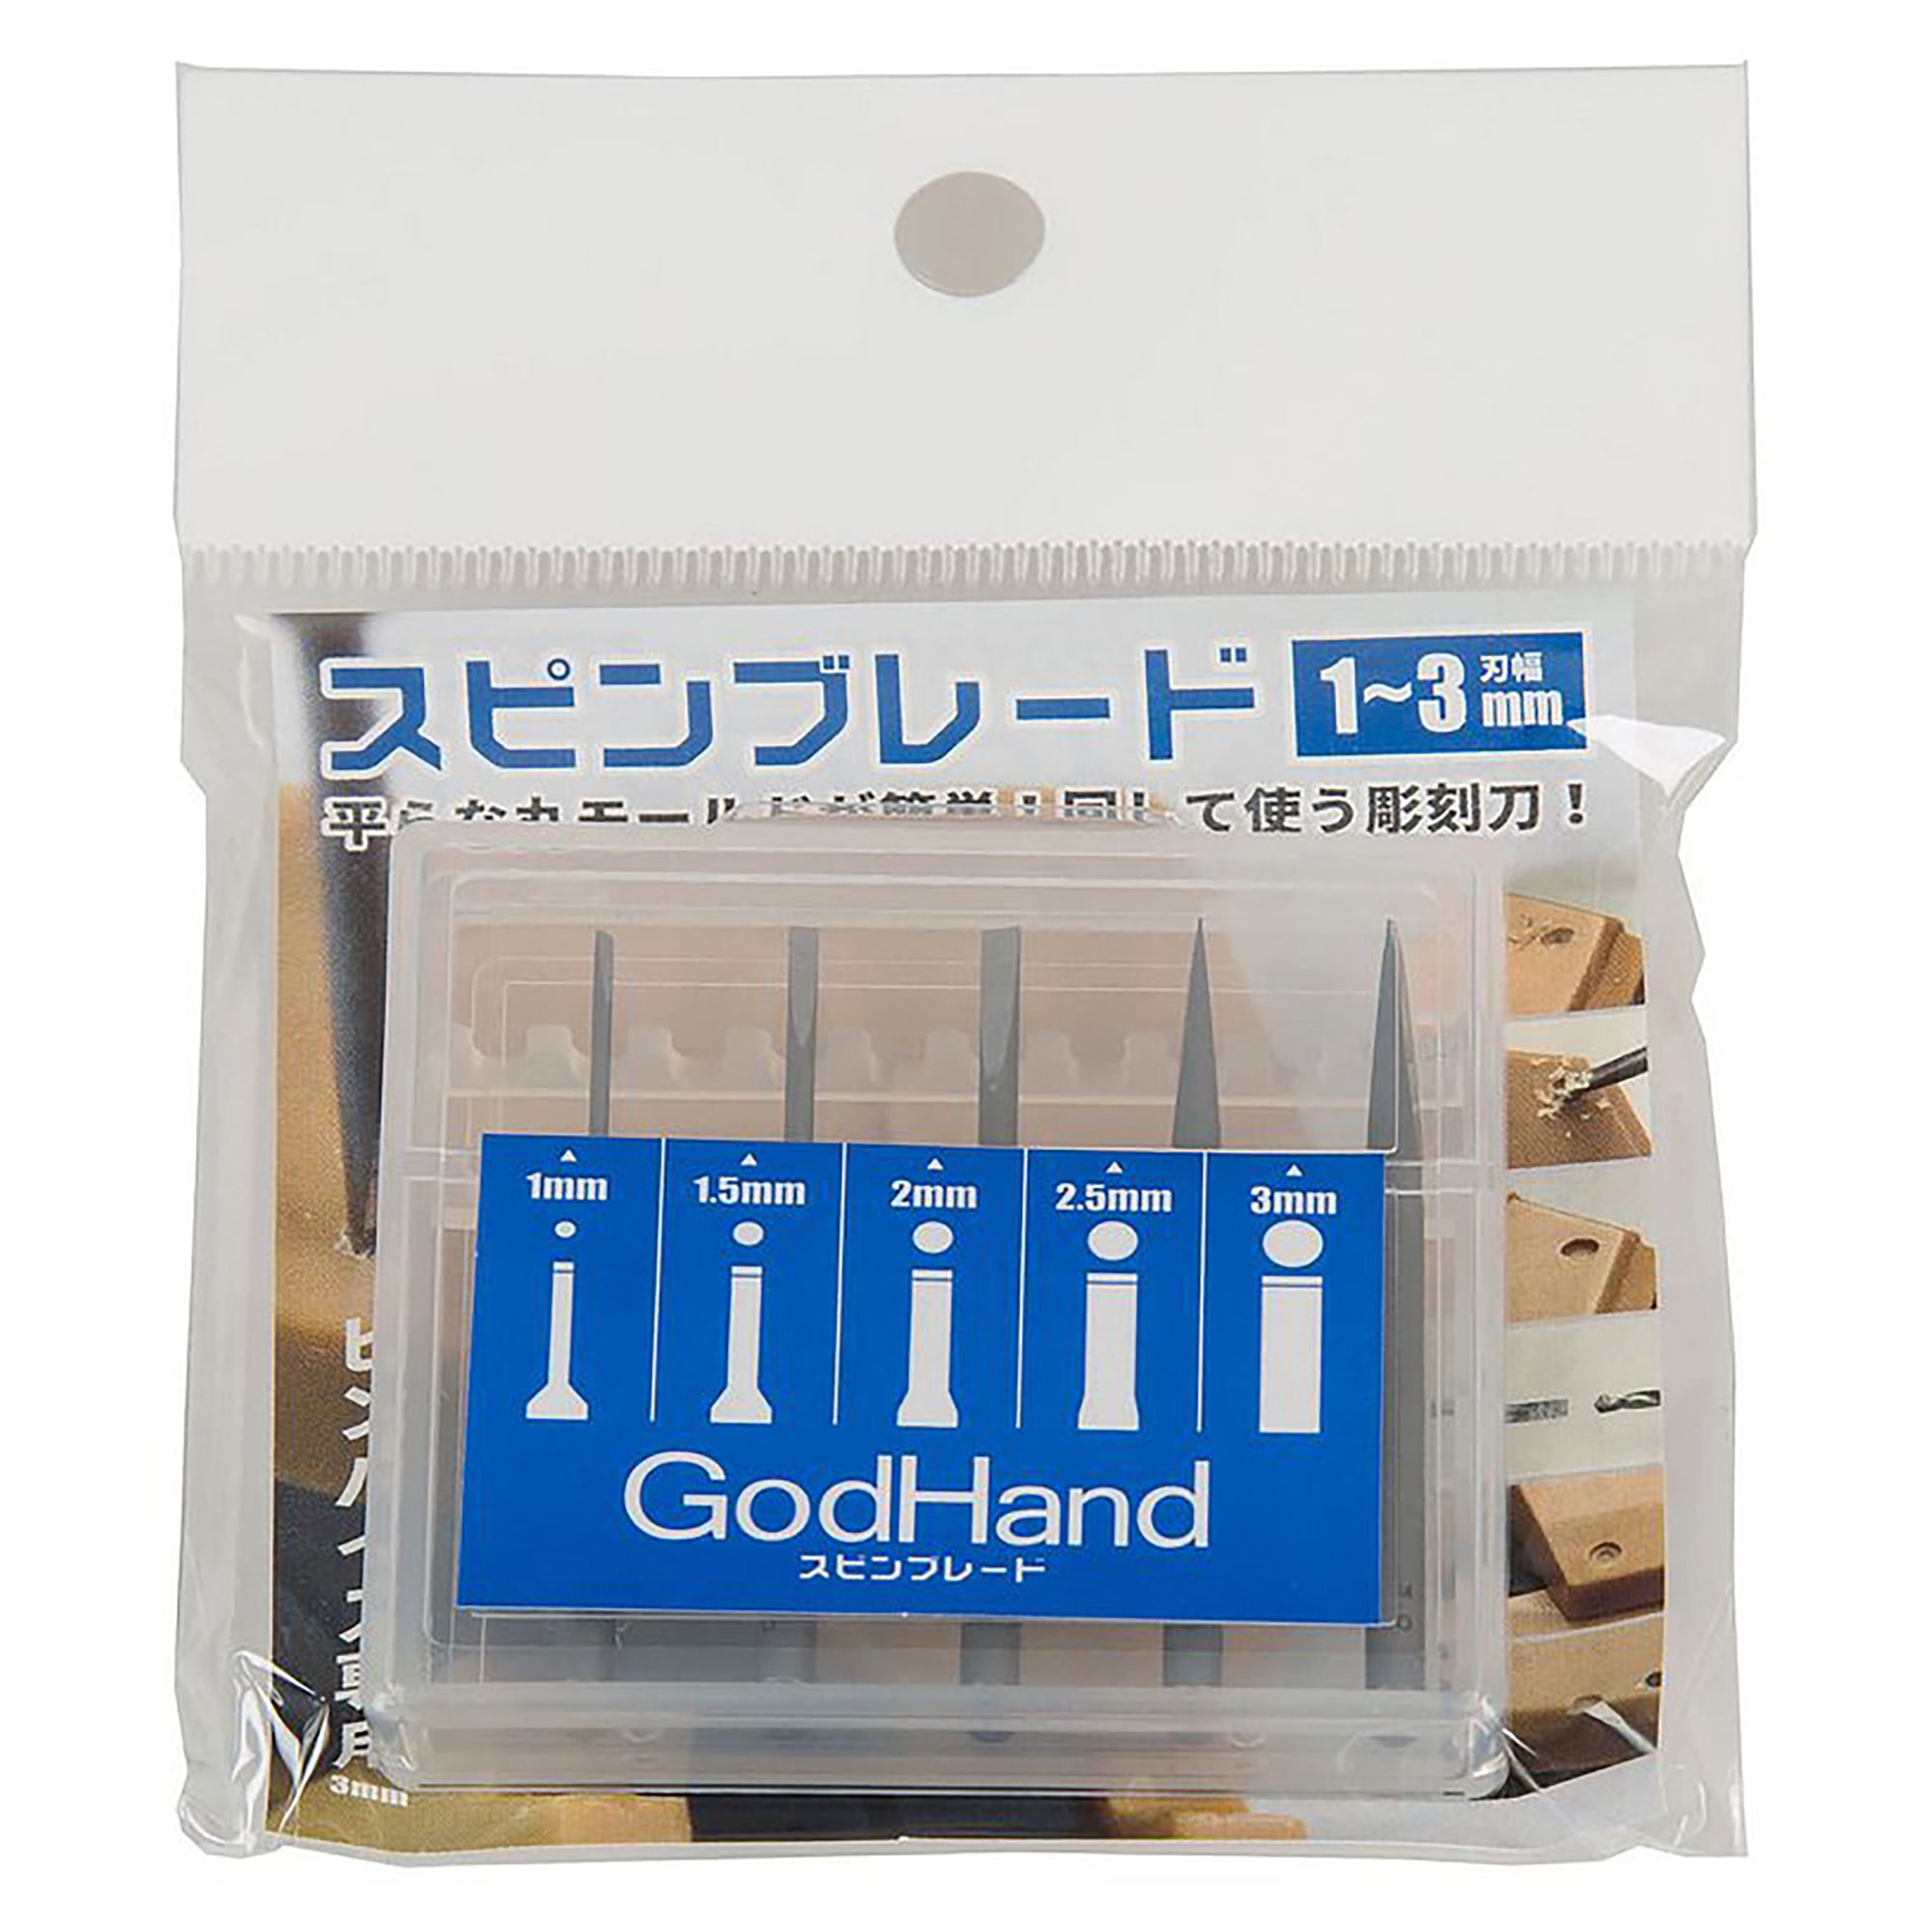 GodHand GH-SB-1-3 Pin Vise Spin Blade Bit Set